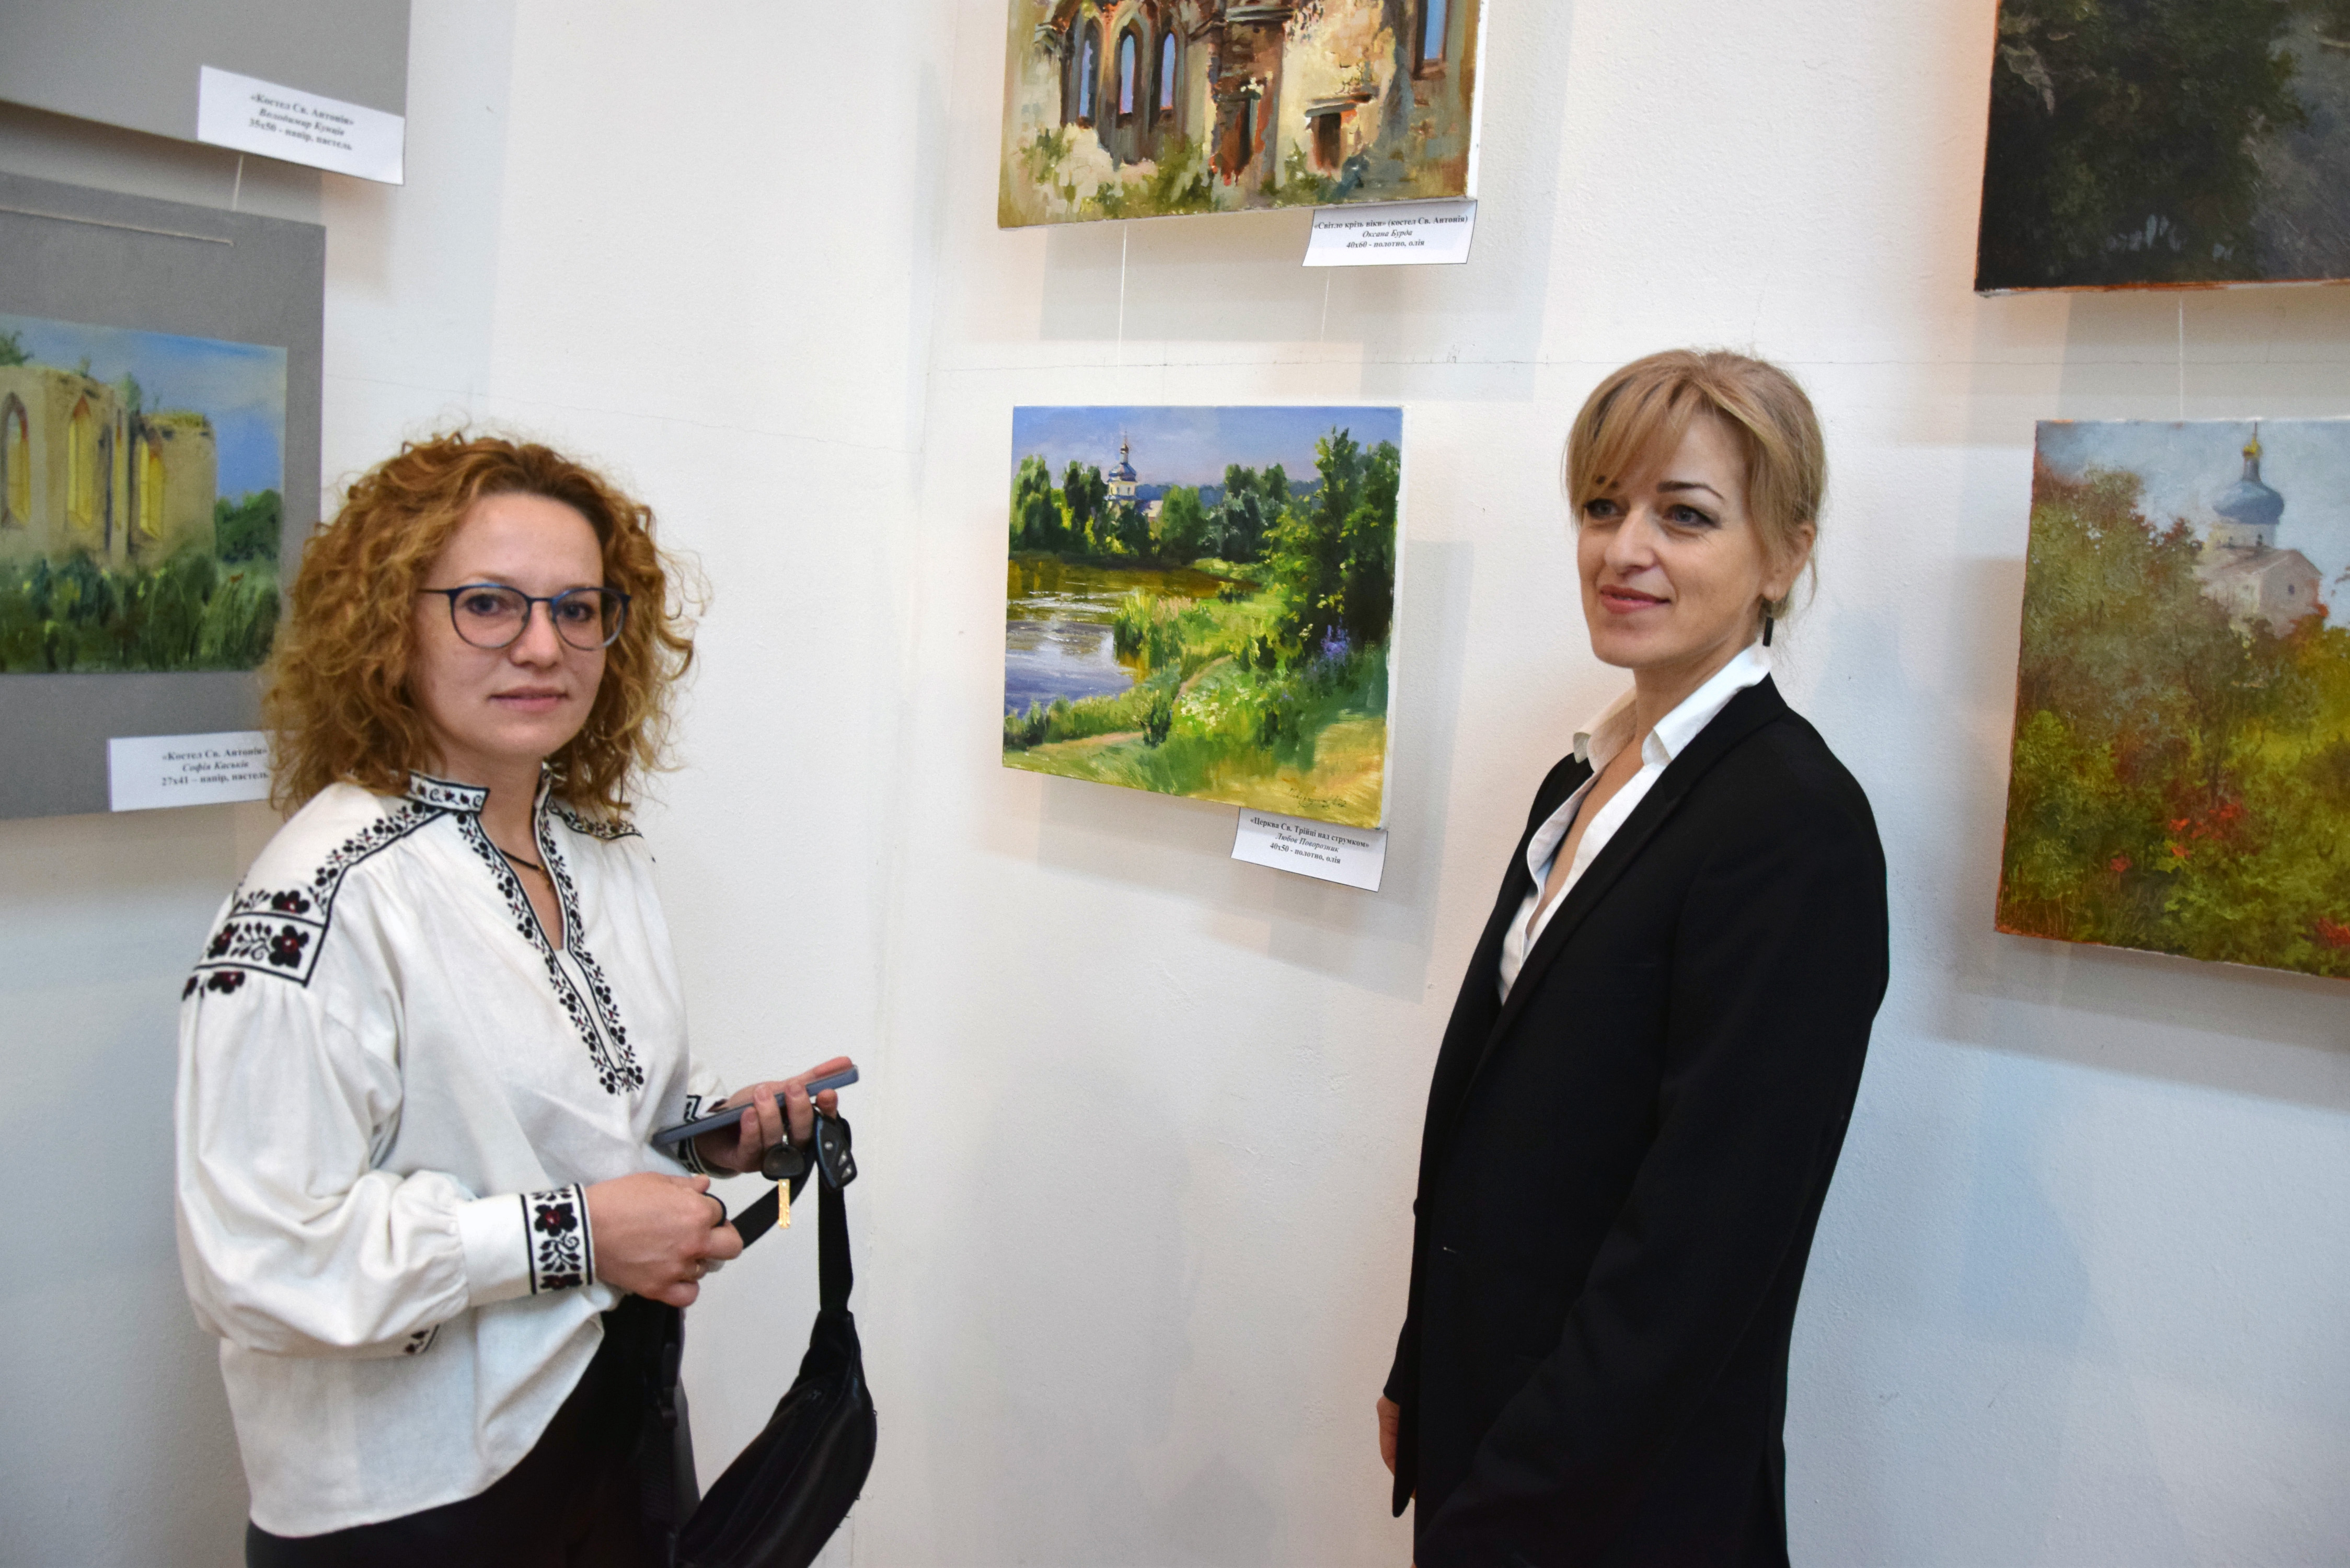 Художниці з Тернополя (зліва направо) Оксана Бурда та Любов Поворозник прийшли на виставку, щоб показати власні роботи й ознайомитися із творами колег. Фото надав автор